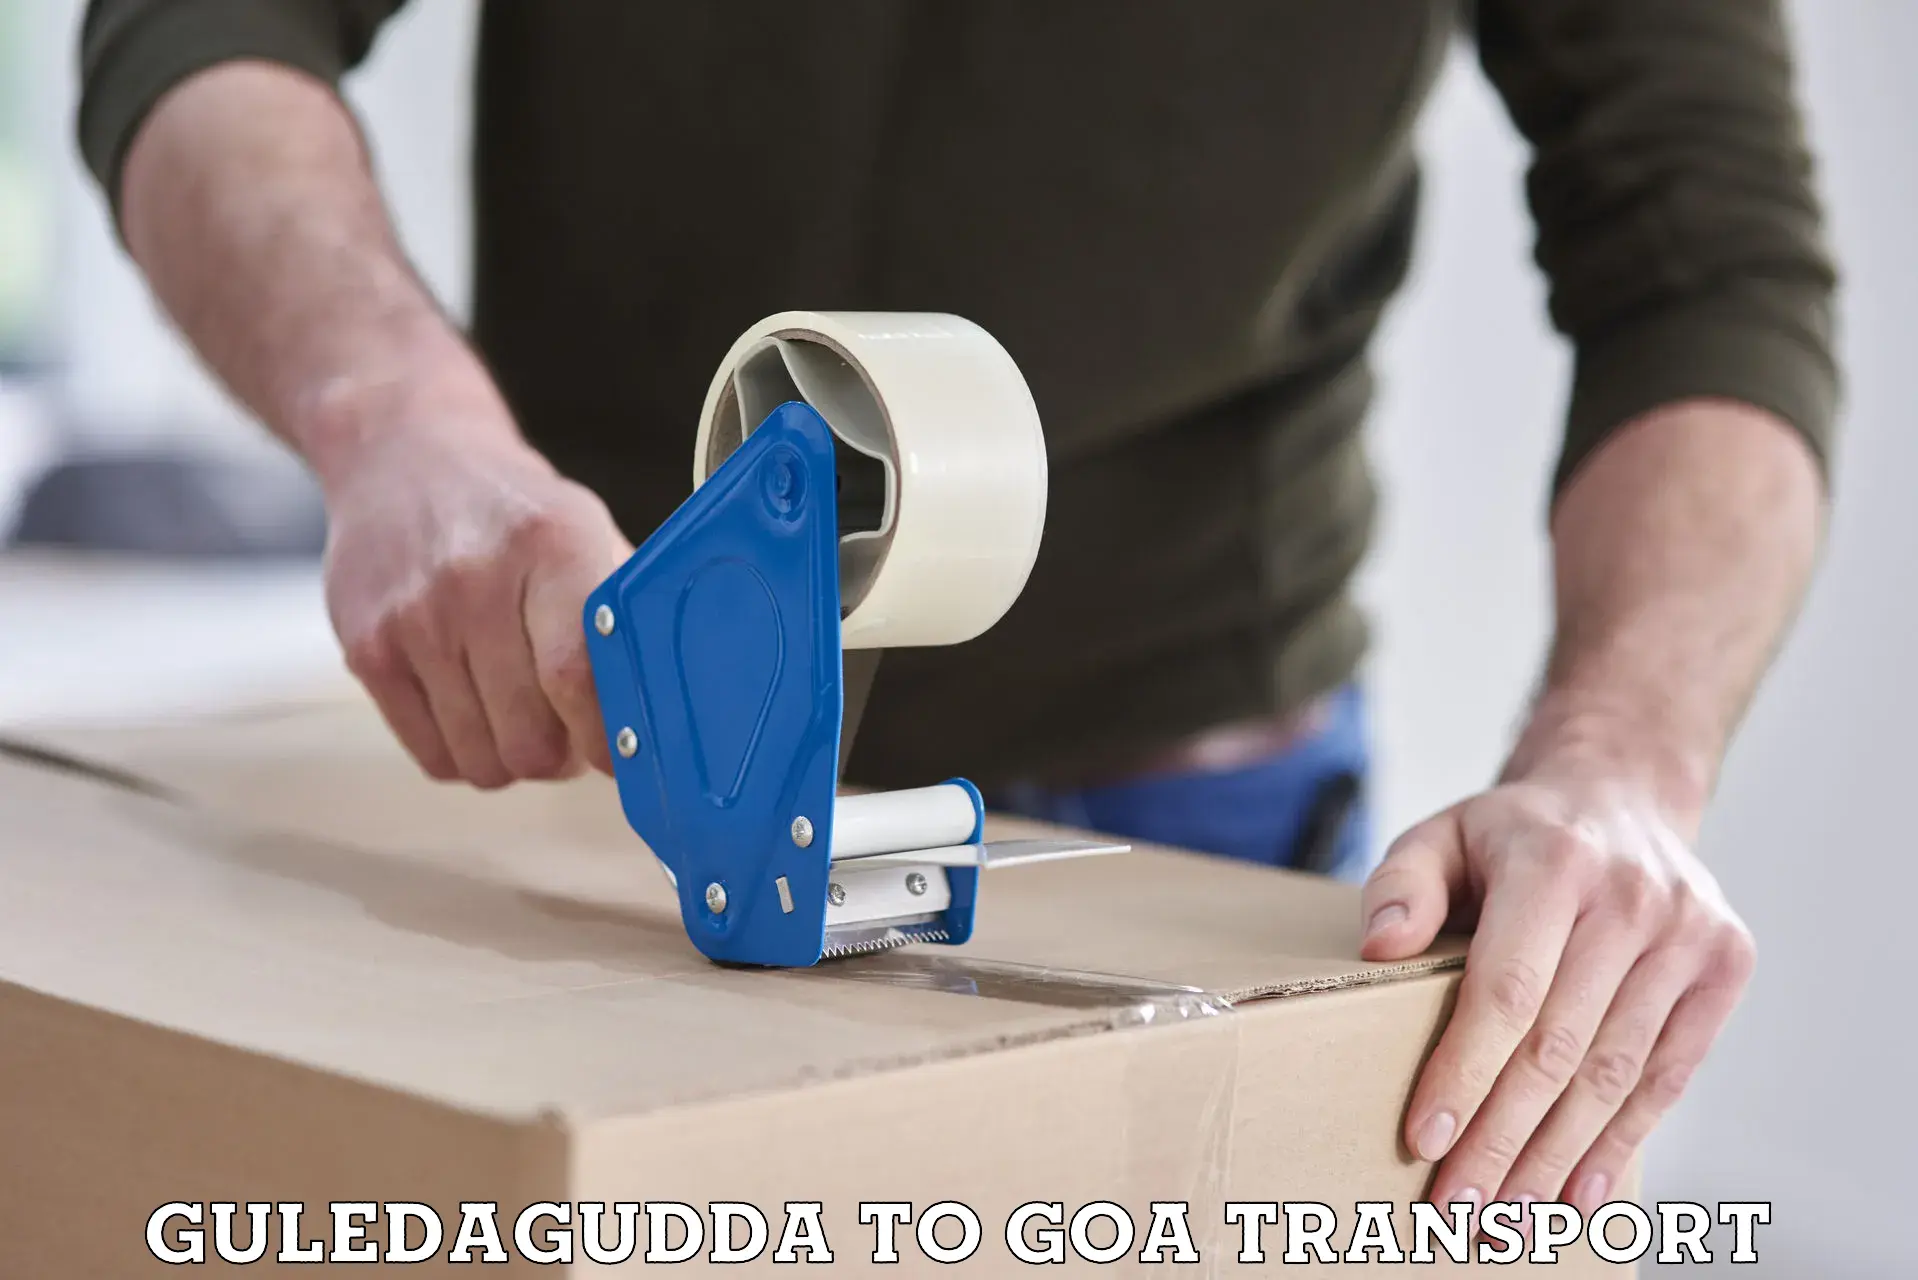 Scooty transport charges Guledagudda to Mormugao Port